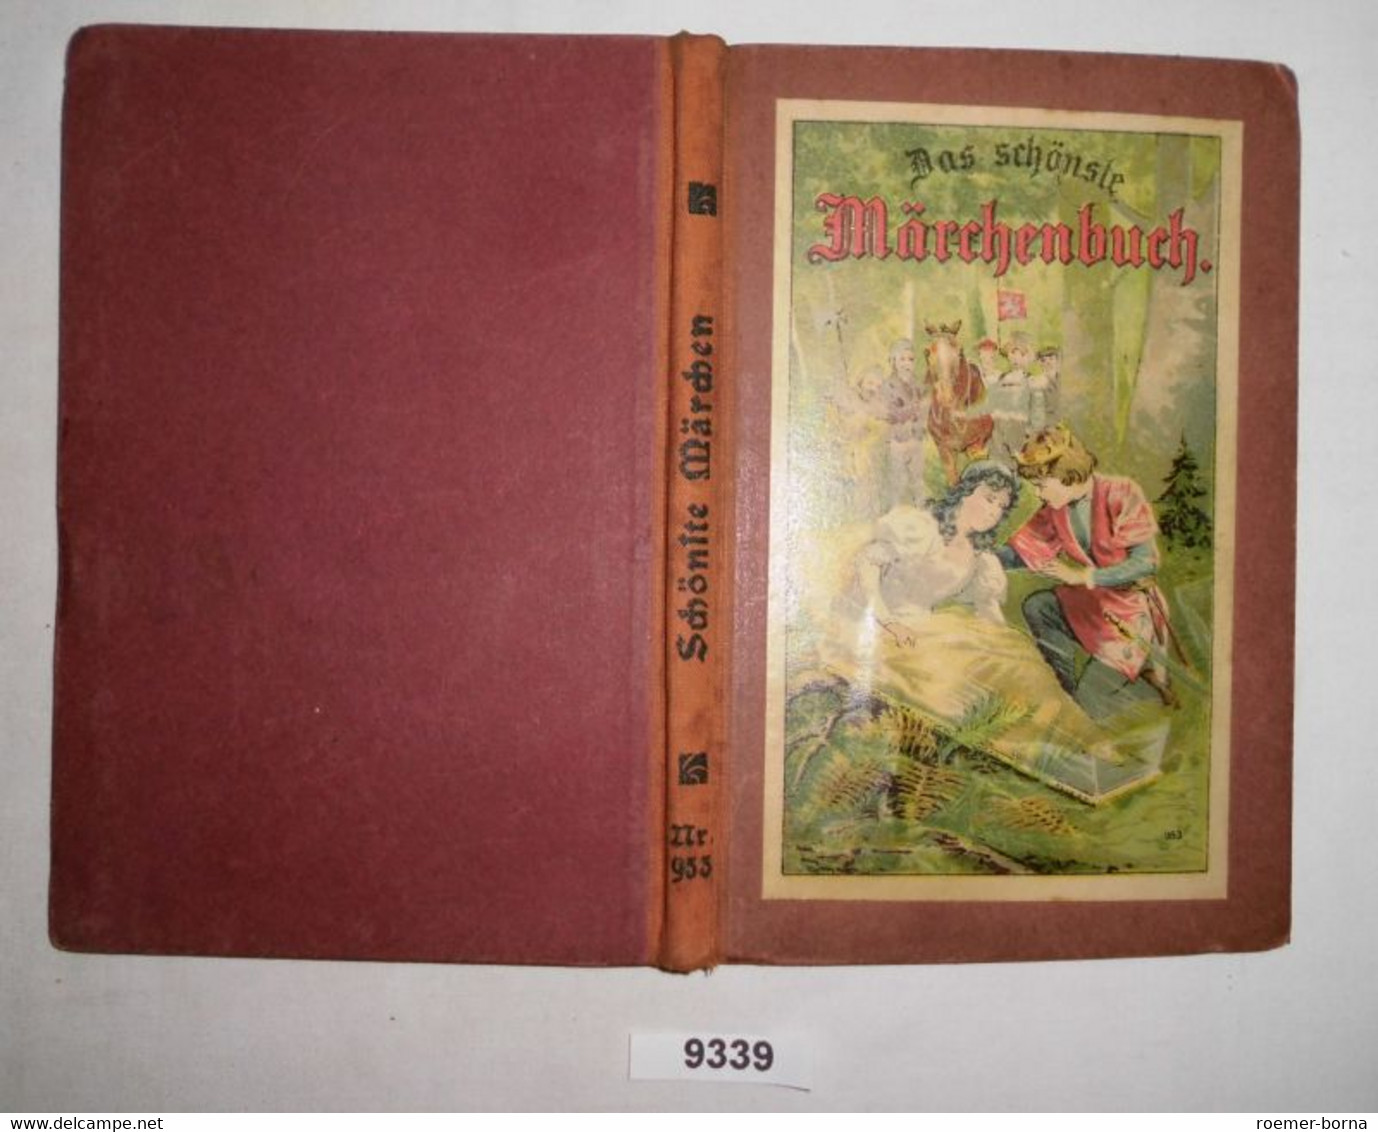 Das Schönste Märchenbuch Für Kinder - Märchen